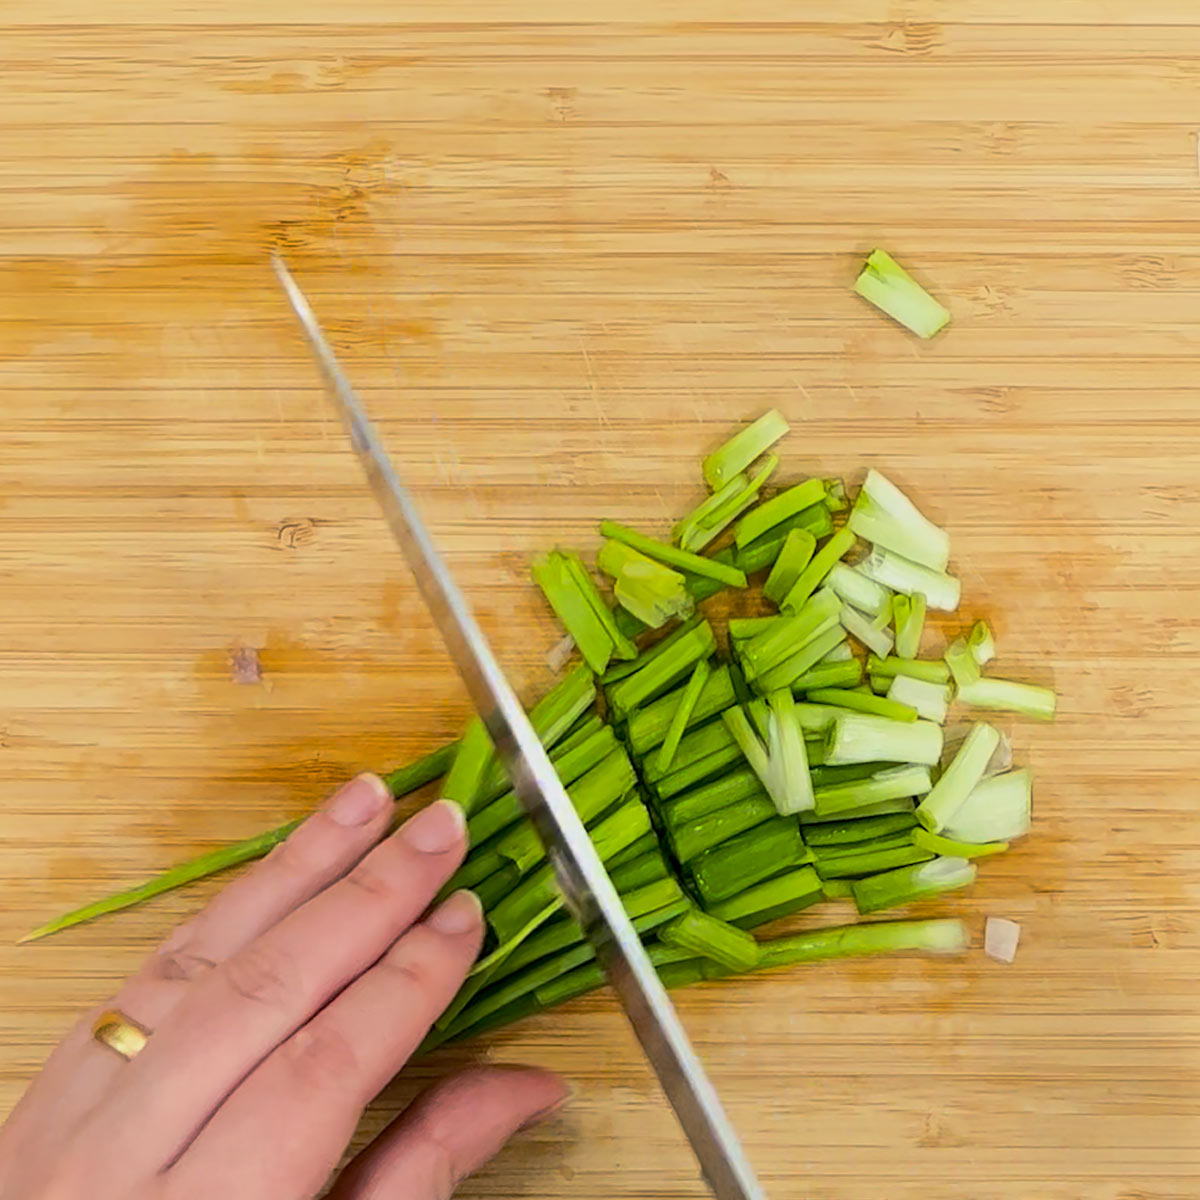 cut green onions stalks